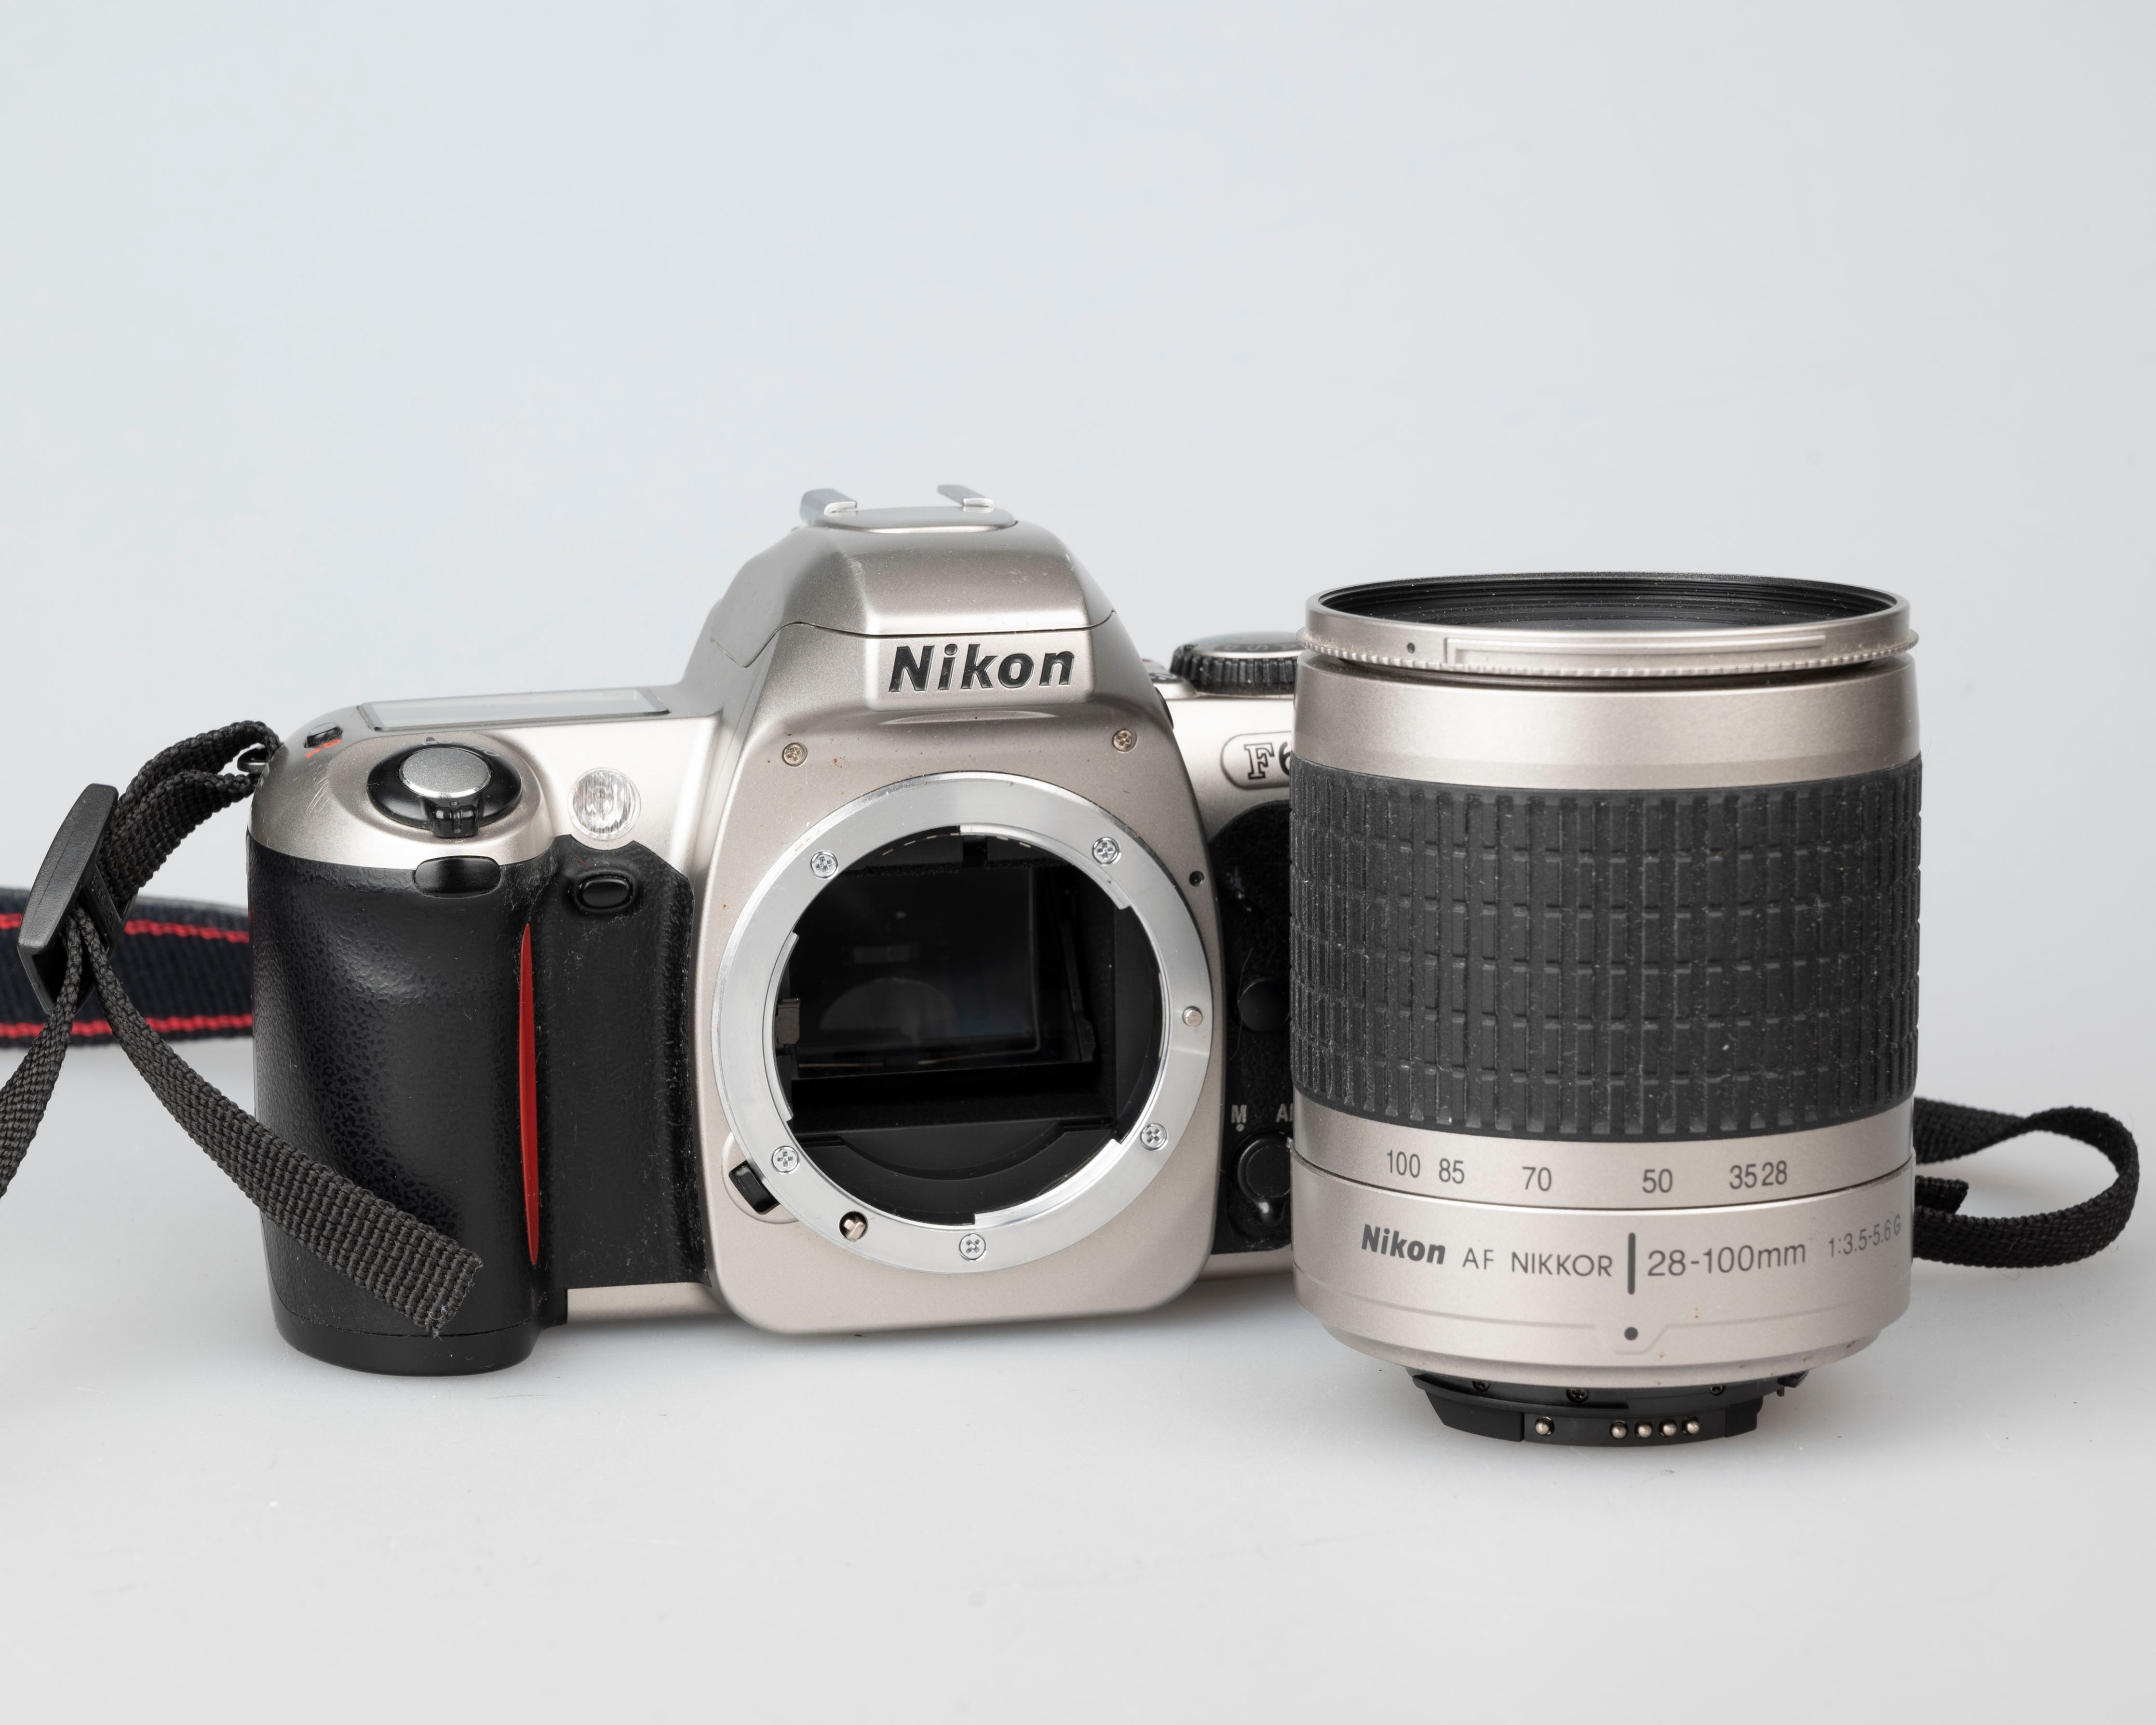 Nikon F65 (aka N65) 35mm film SLR w/ AF Nikkor 28-100mm lens